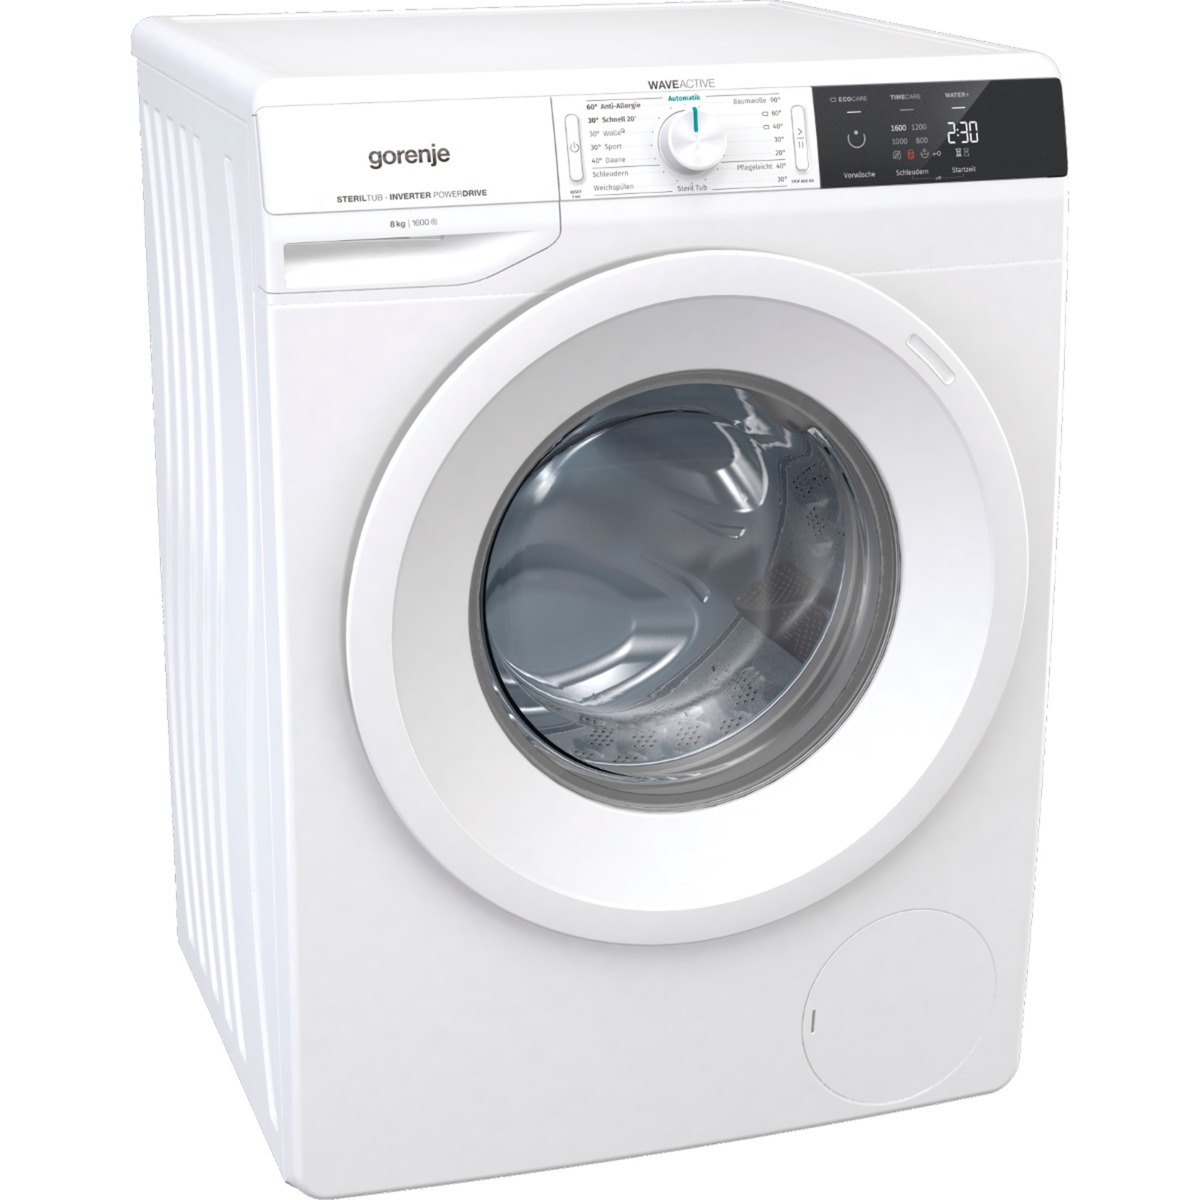 WNEI86BPS, Waschmaschine von Gorenje